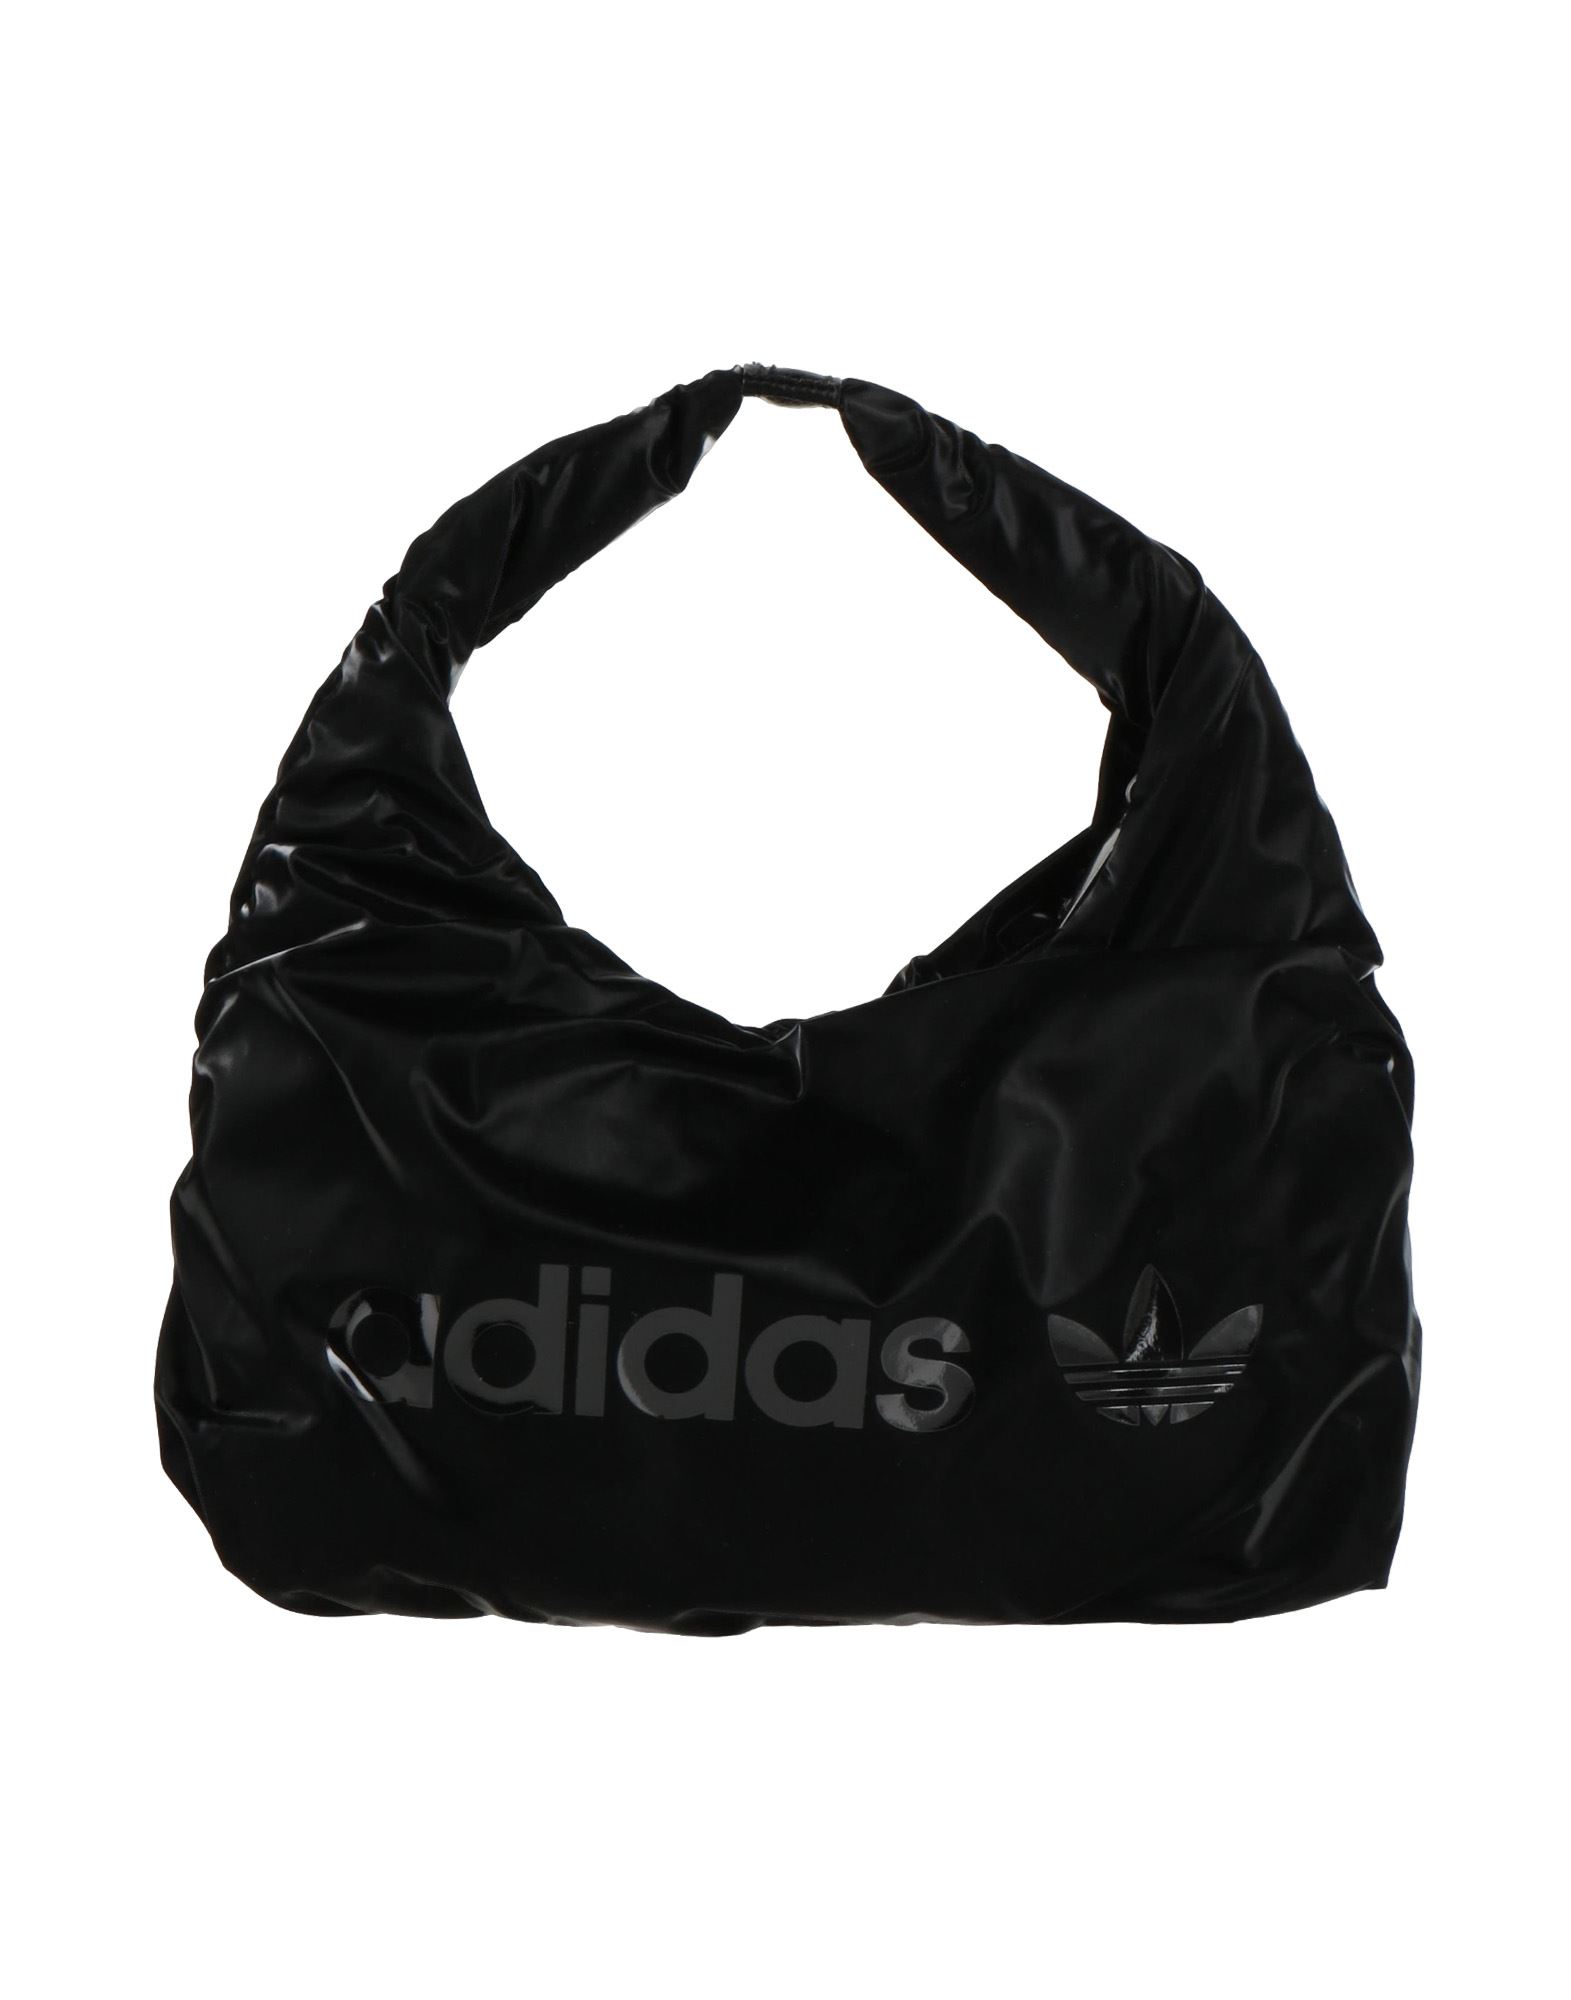 Adidas Originals Handbags In Black